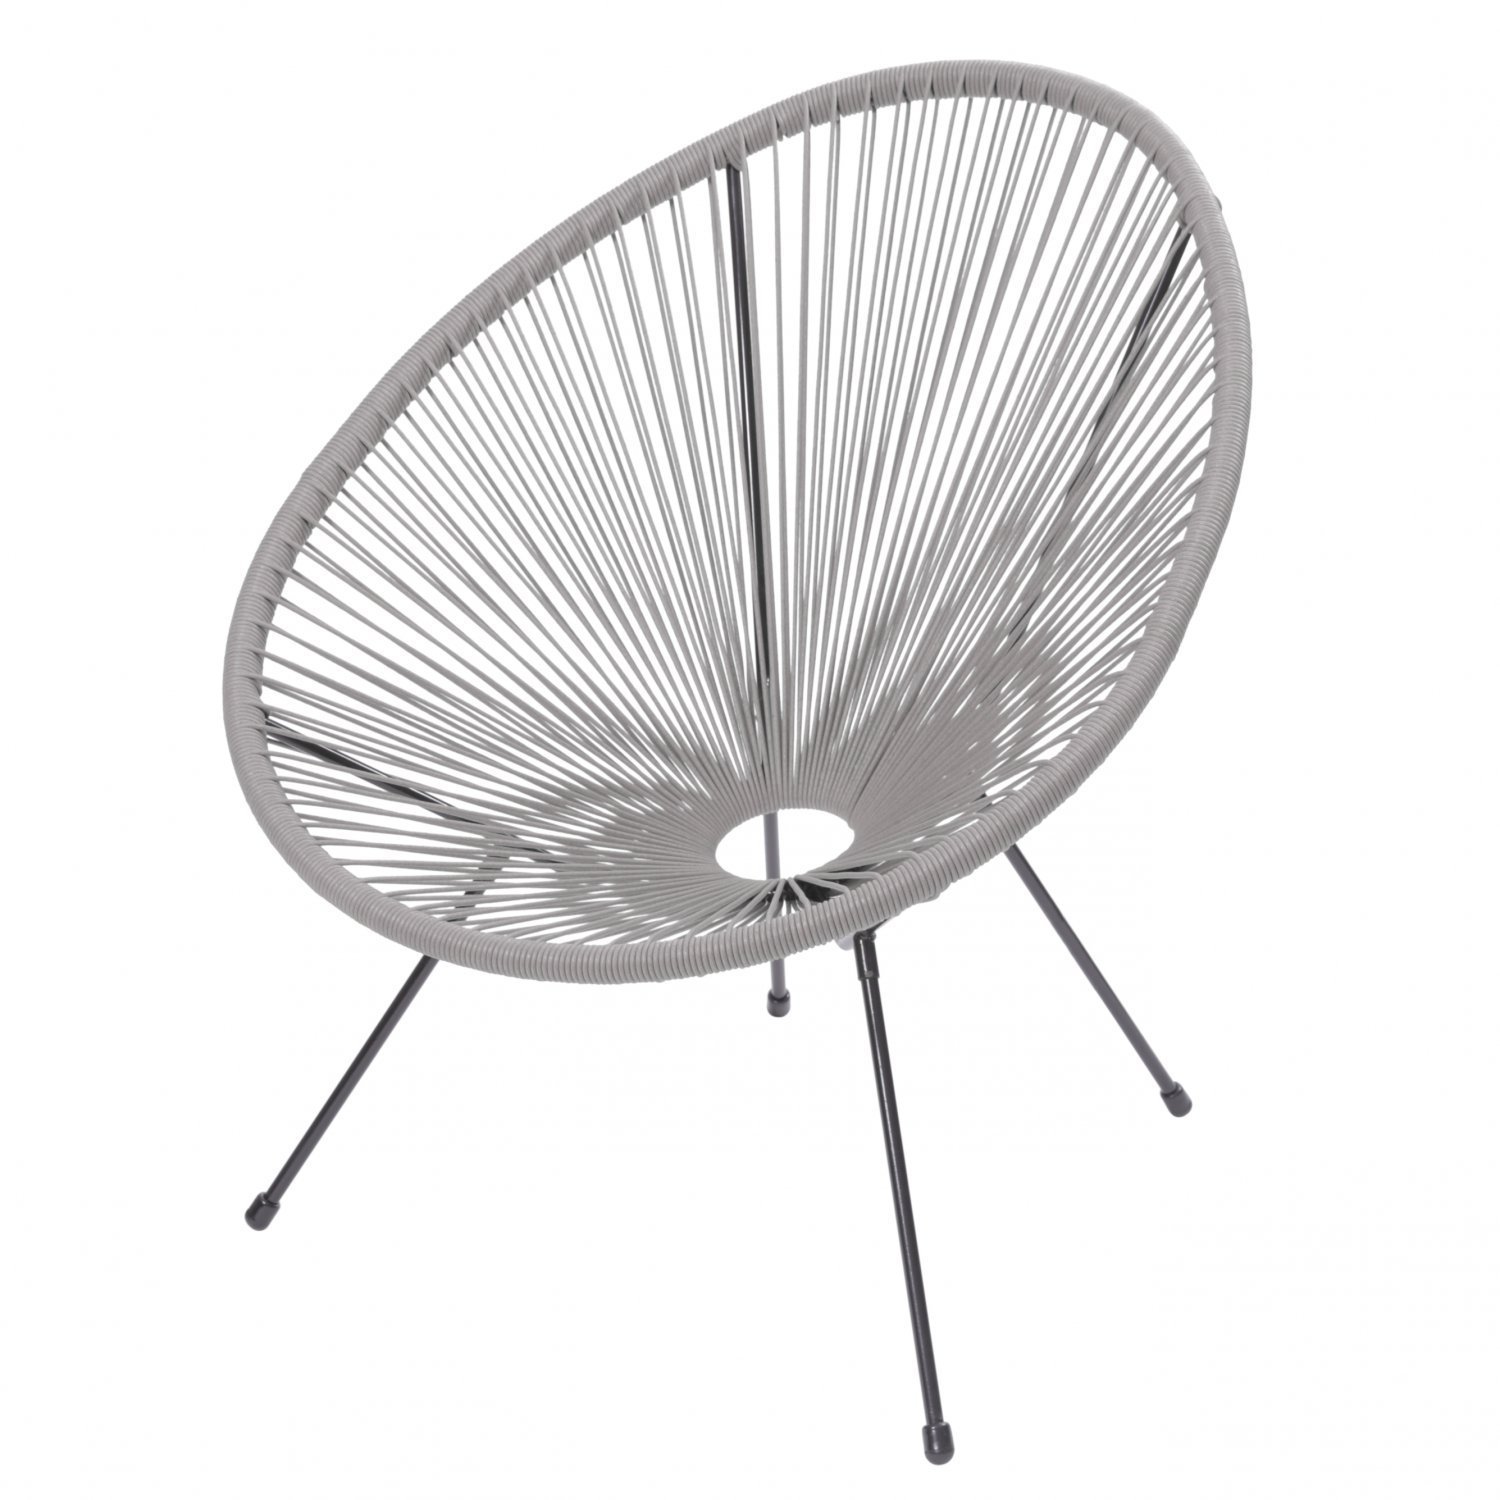 Cadeira Acapulco em Aço e Cordas de PVC 1160 Or Design - 3